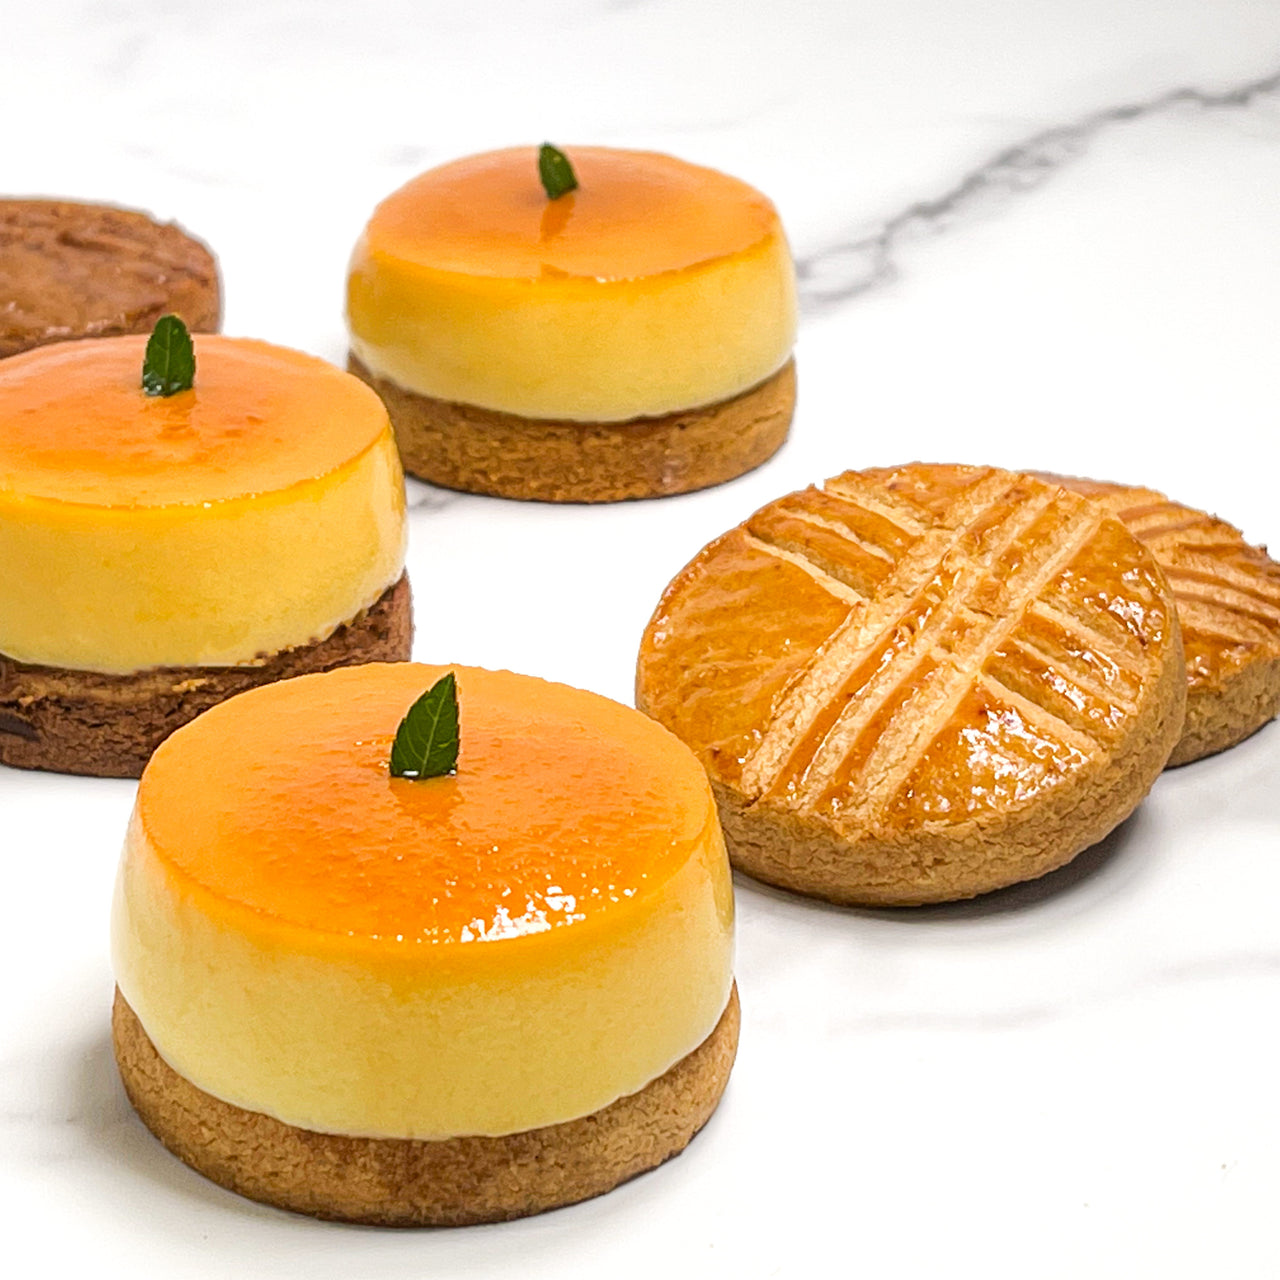 焦糖布丁撻 & 無麩質雙色布列塔尼酥餅   | Caramel Pudding Tart & Gluten-free Sablé Breton